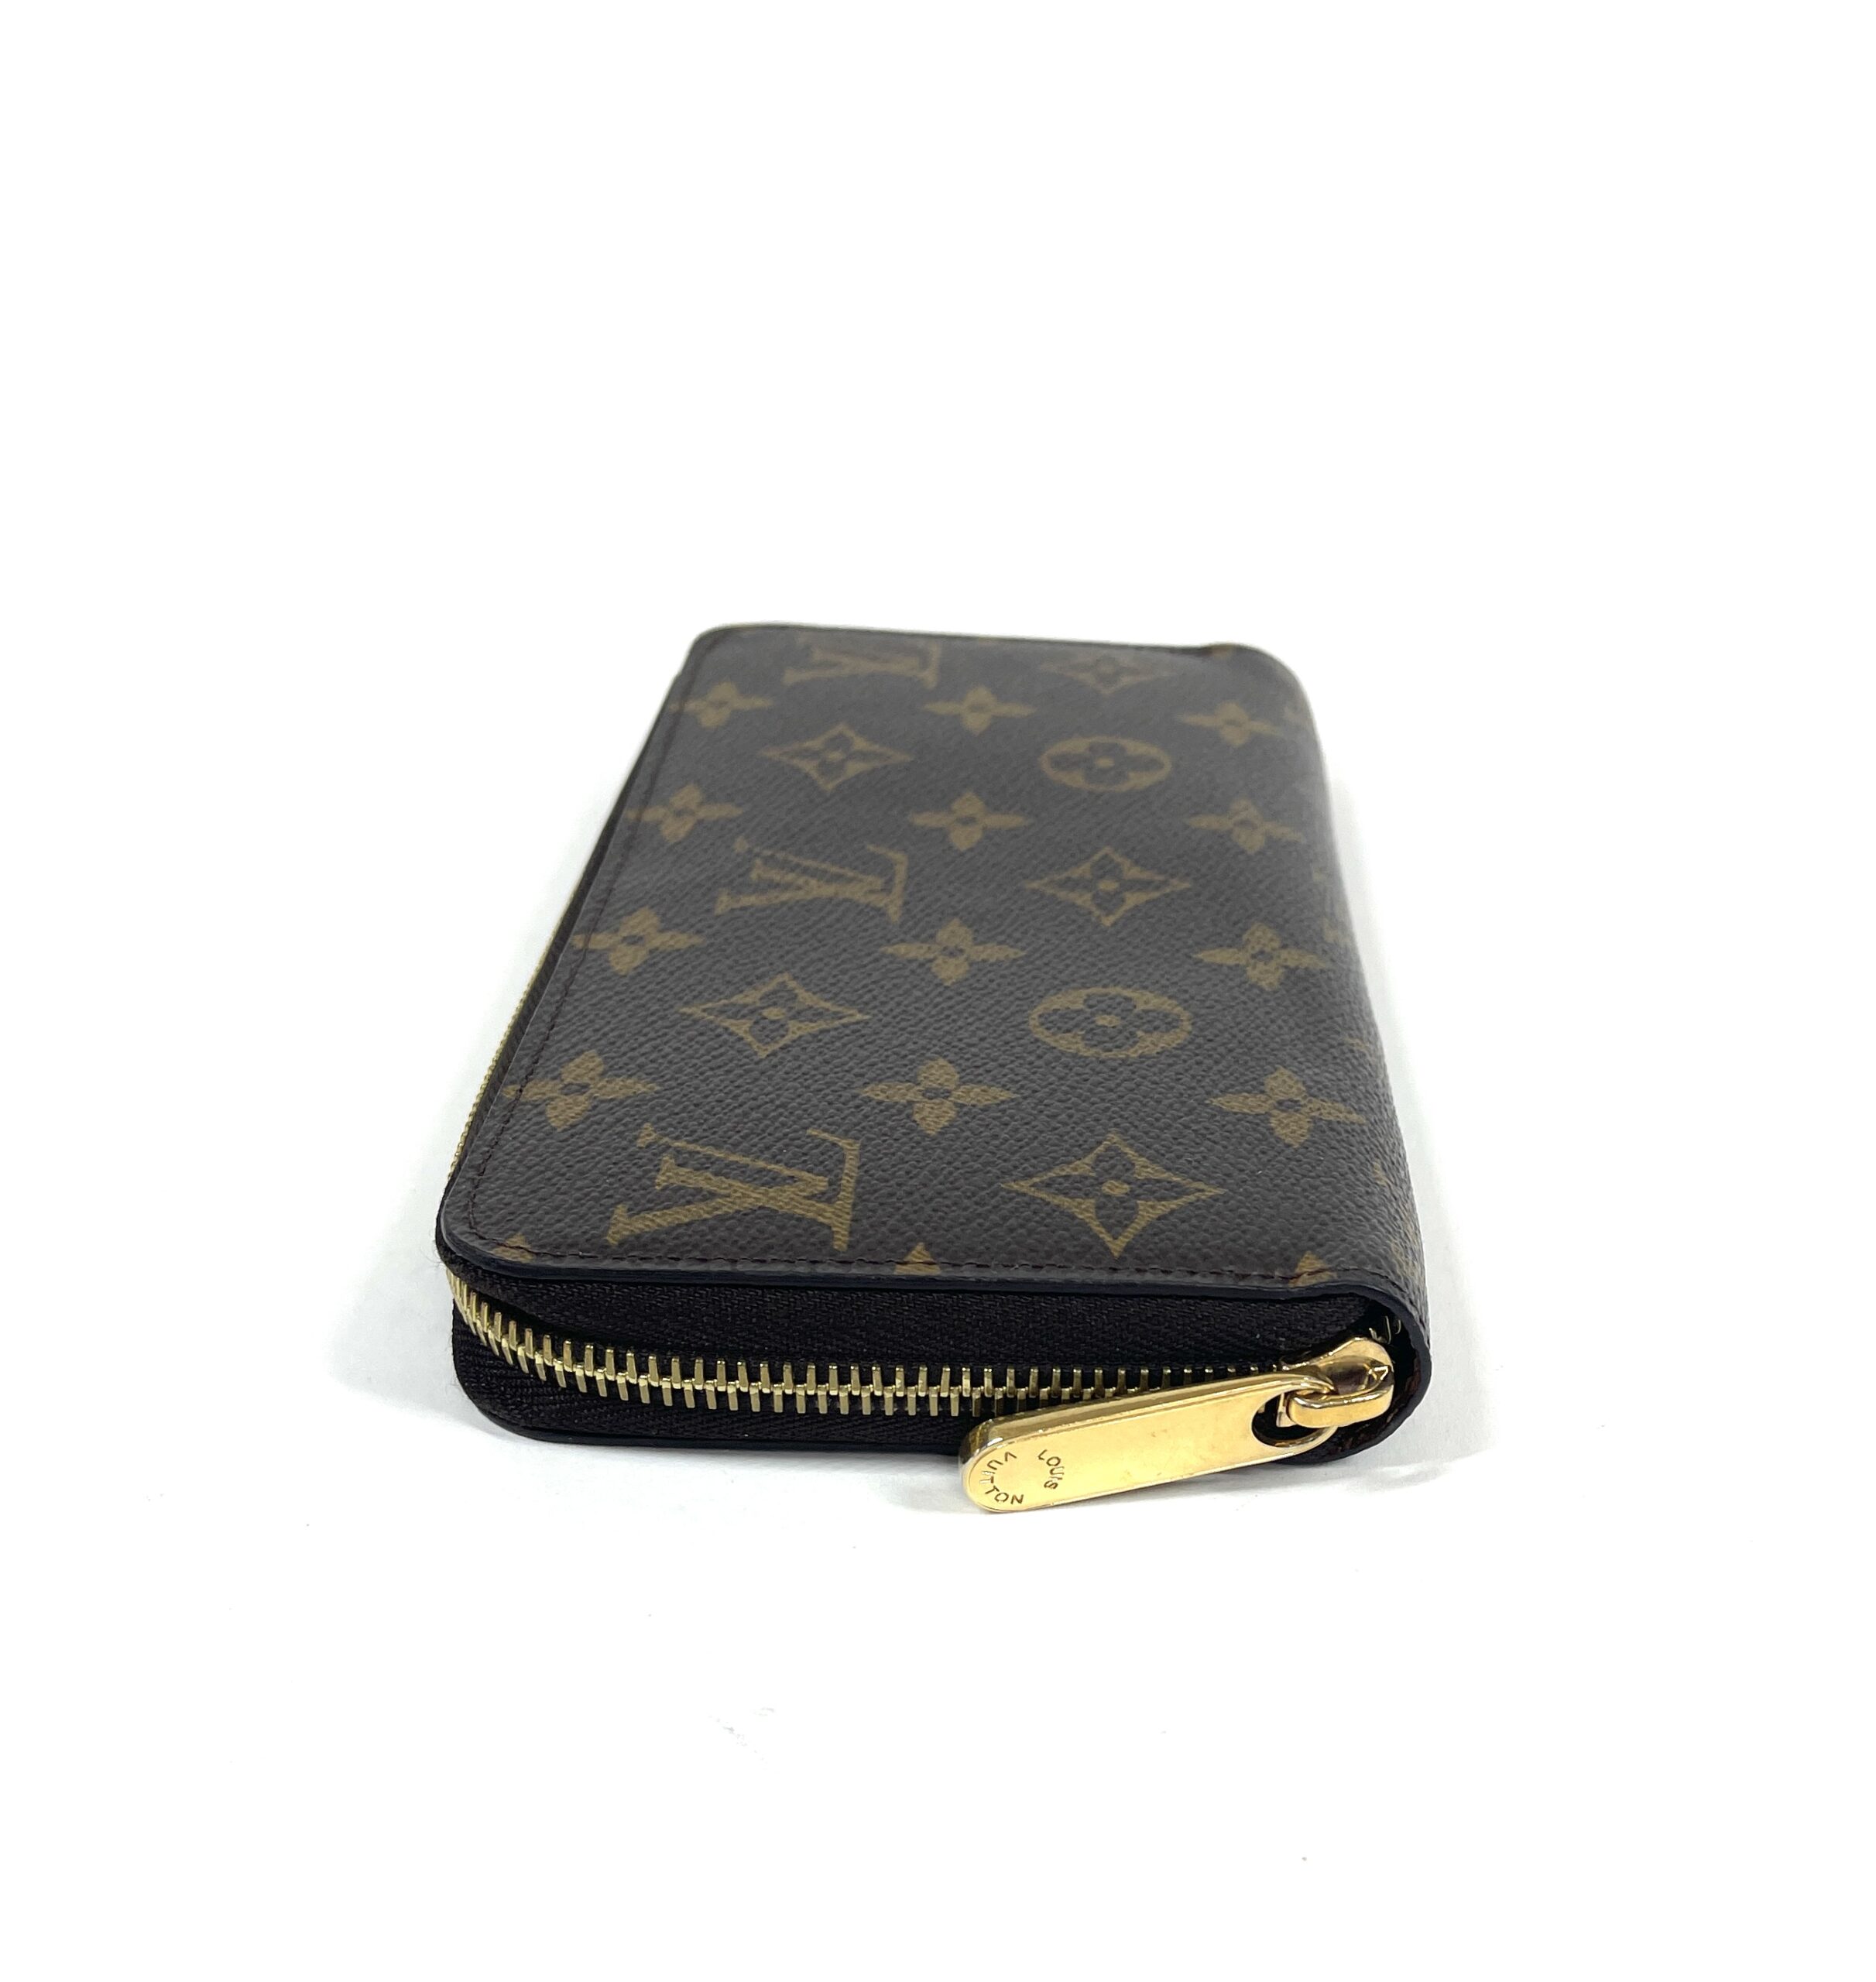 Louis Vuitton Zippy Monogram Patent Leather Wallet on SALE